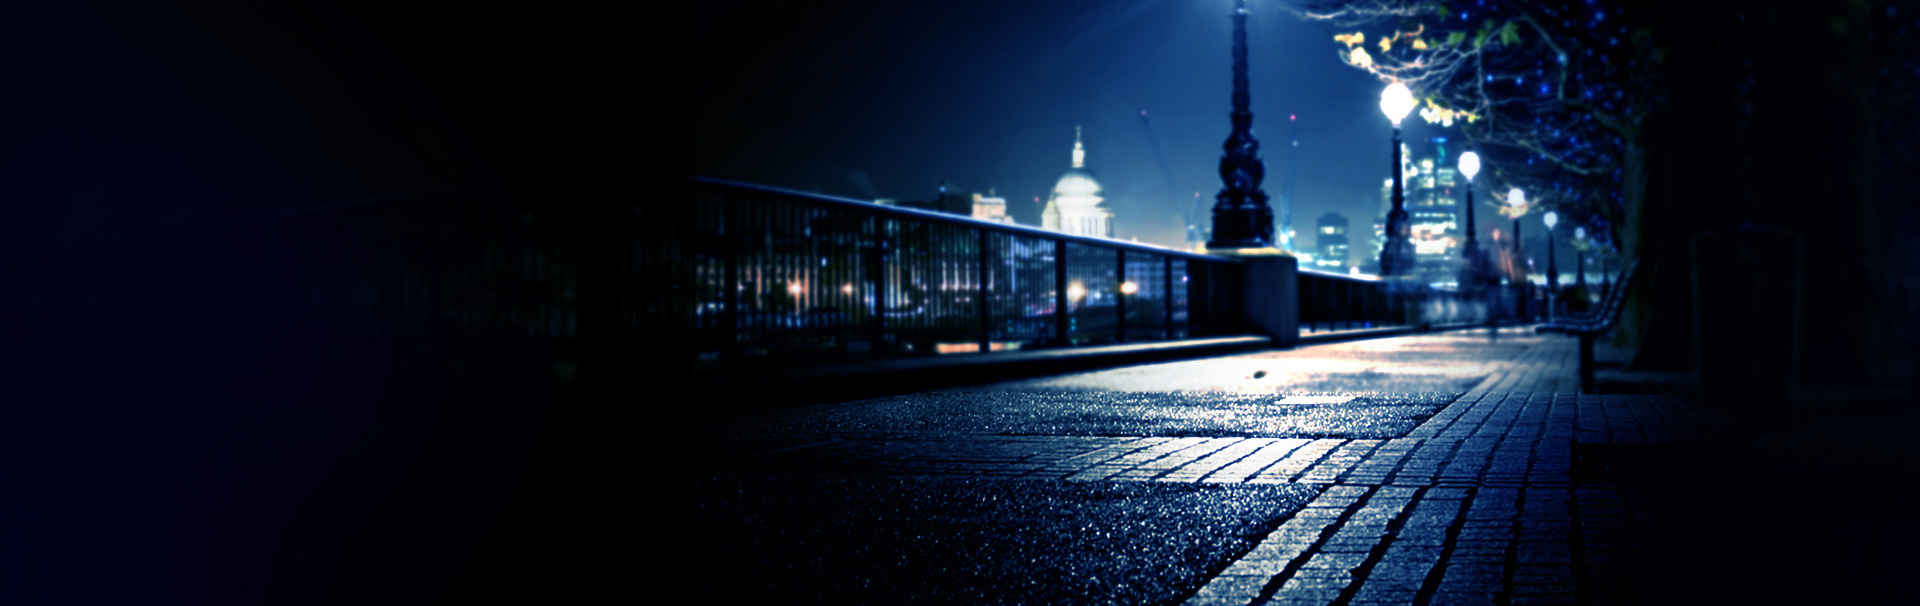 孤独城市夜景背景设计素材-